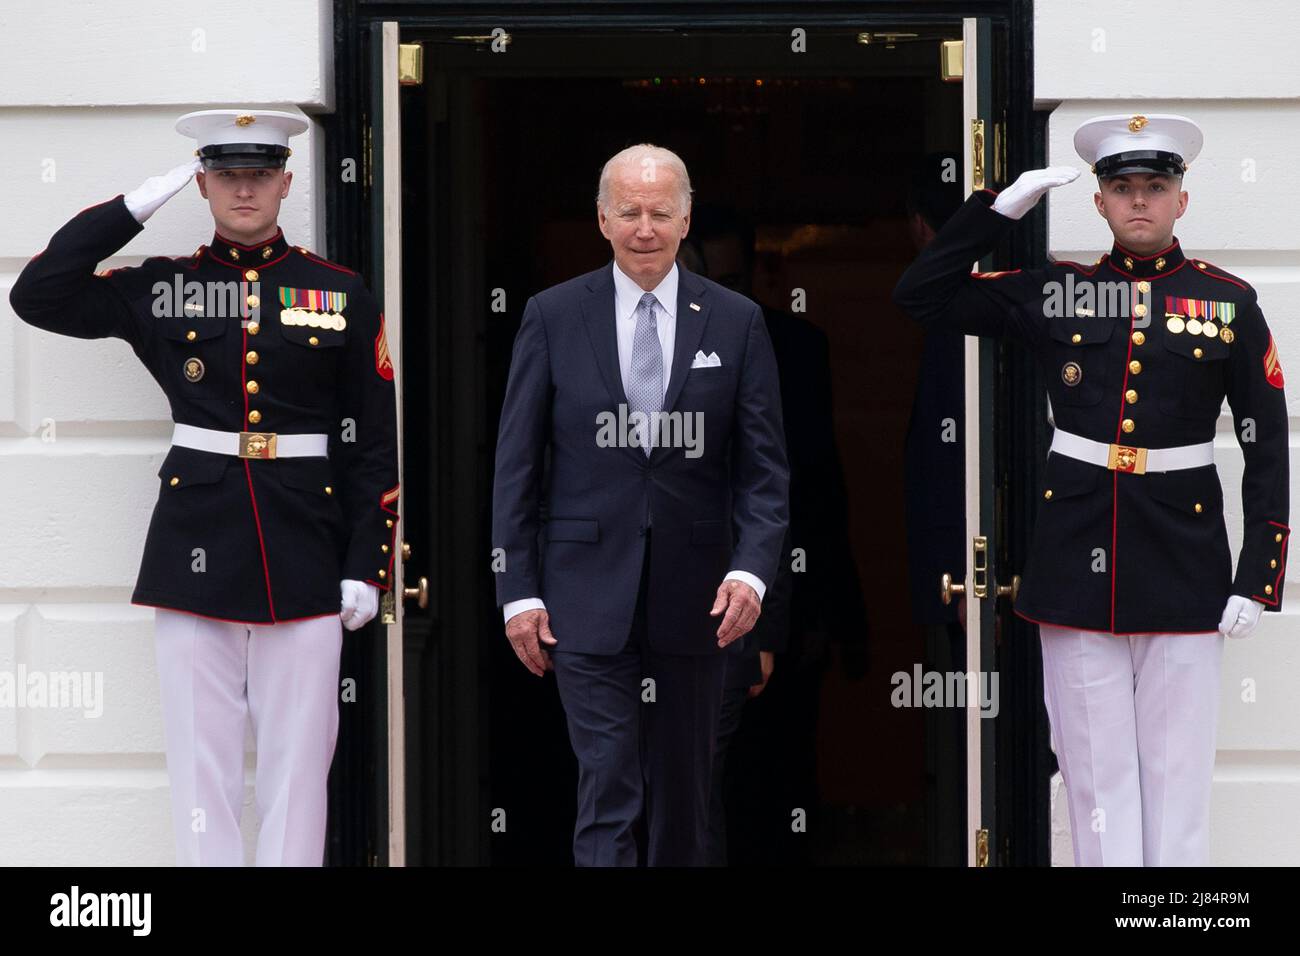 LE président AMÉRICAIN Joe Biden s'est mis à poser avec les dirigeants du Sommet spécial États-Unis-ASEAN lors d'une photo de famille sur la pelouse sud de la Maison Blanche à Washington, DC, Etats-Unis, 12 mars 2022. Biden a accueilli les dirigeants des pays de l'ANASE et le Secrétaire général de l'ANASE à la Maison Blanche, alors que le Sommet spécial États-Unis-ANASE se réunit, le deuxième Sommet spécial depuis 2016. Le sommet devrait aborder la réponse de la COVID-19 et la sécurité sanitaire mondiale, le changement climatique et le développement durable.Credit: Michael Reynolds/Pool via CNP/MediaPunch Banque D'Images